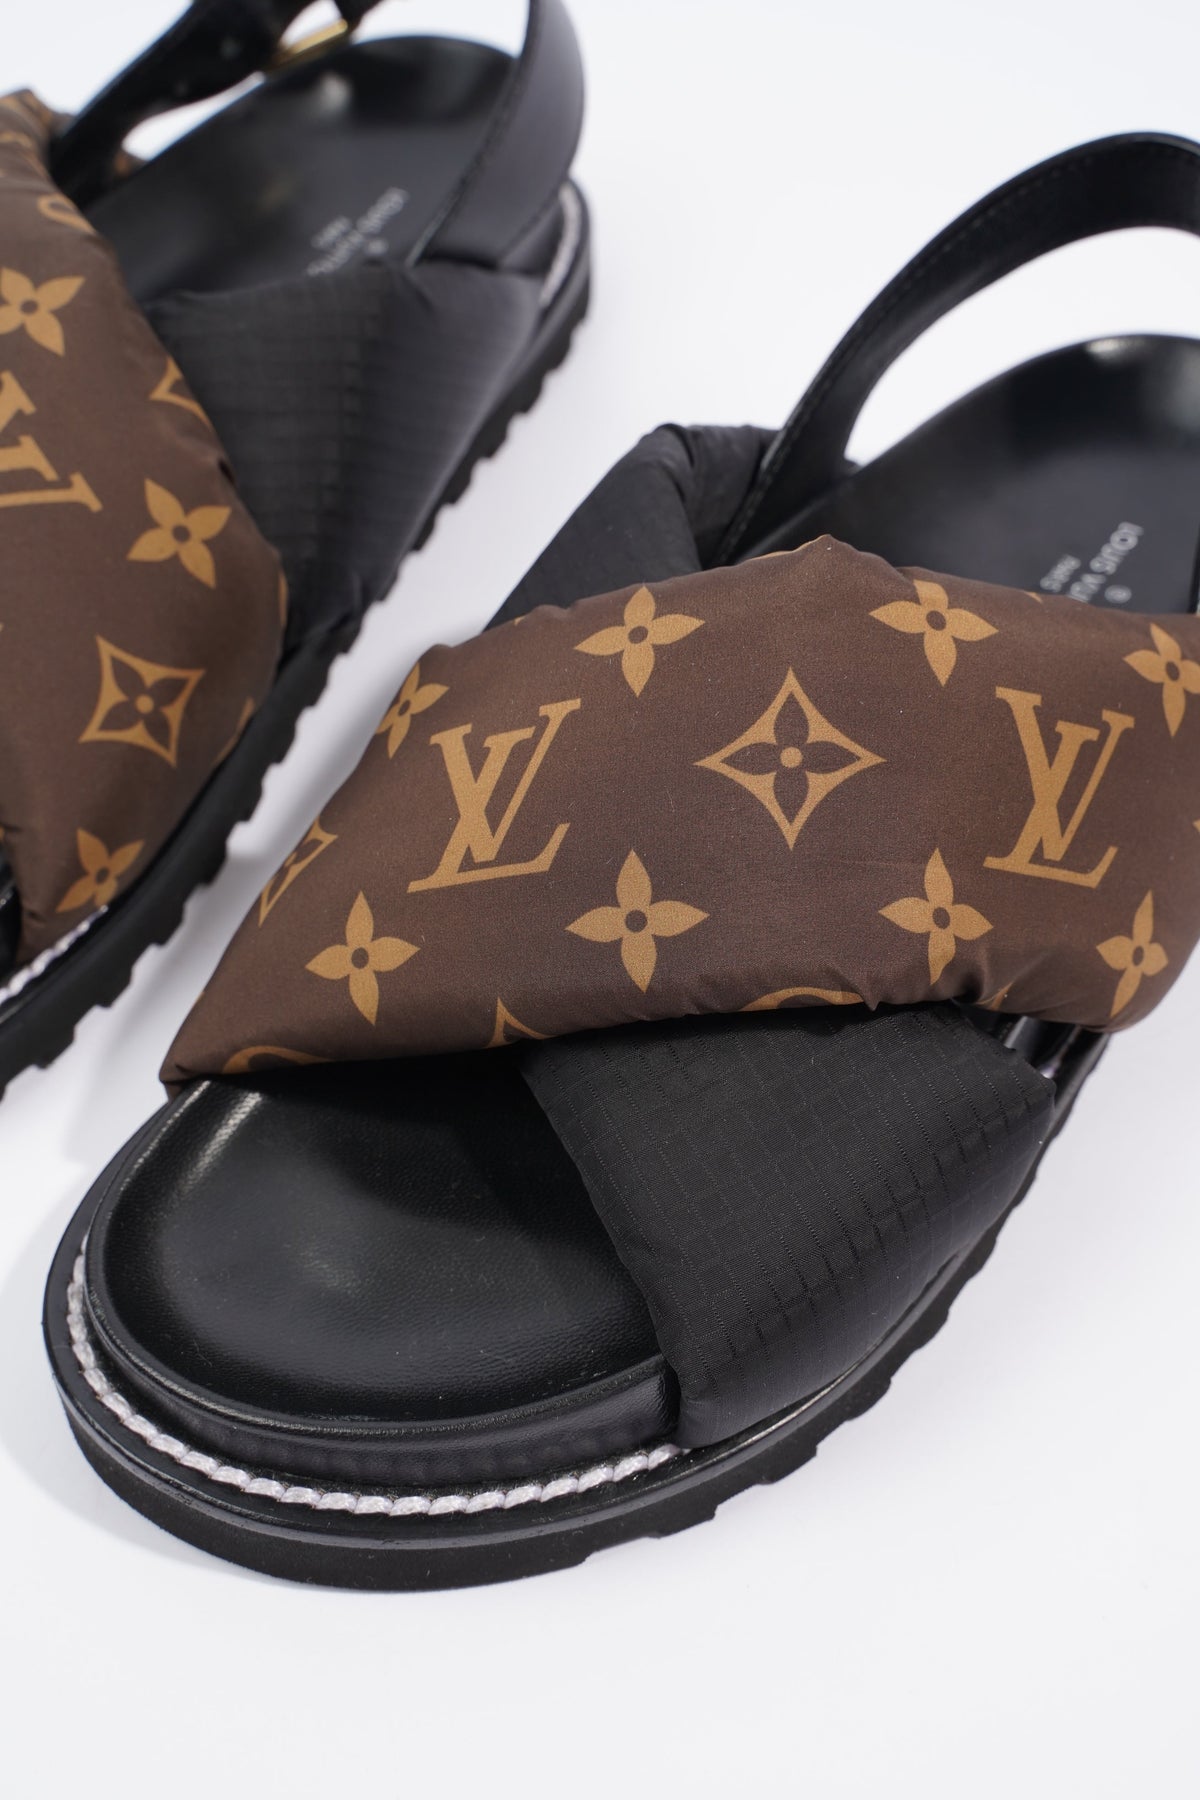 Louis Vuitton, Shoes, Nwob Louis Vuitton Paseo Flat Comfort Sandal Eu 38  Us Size 8